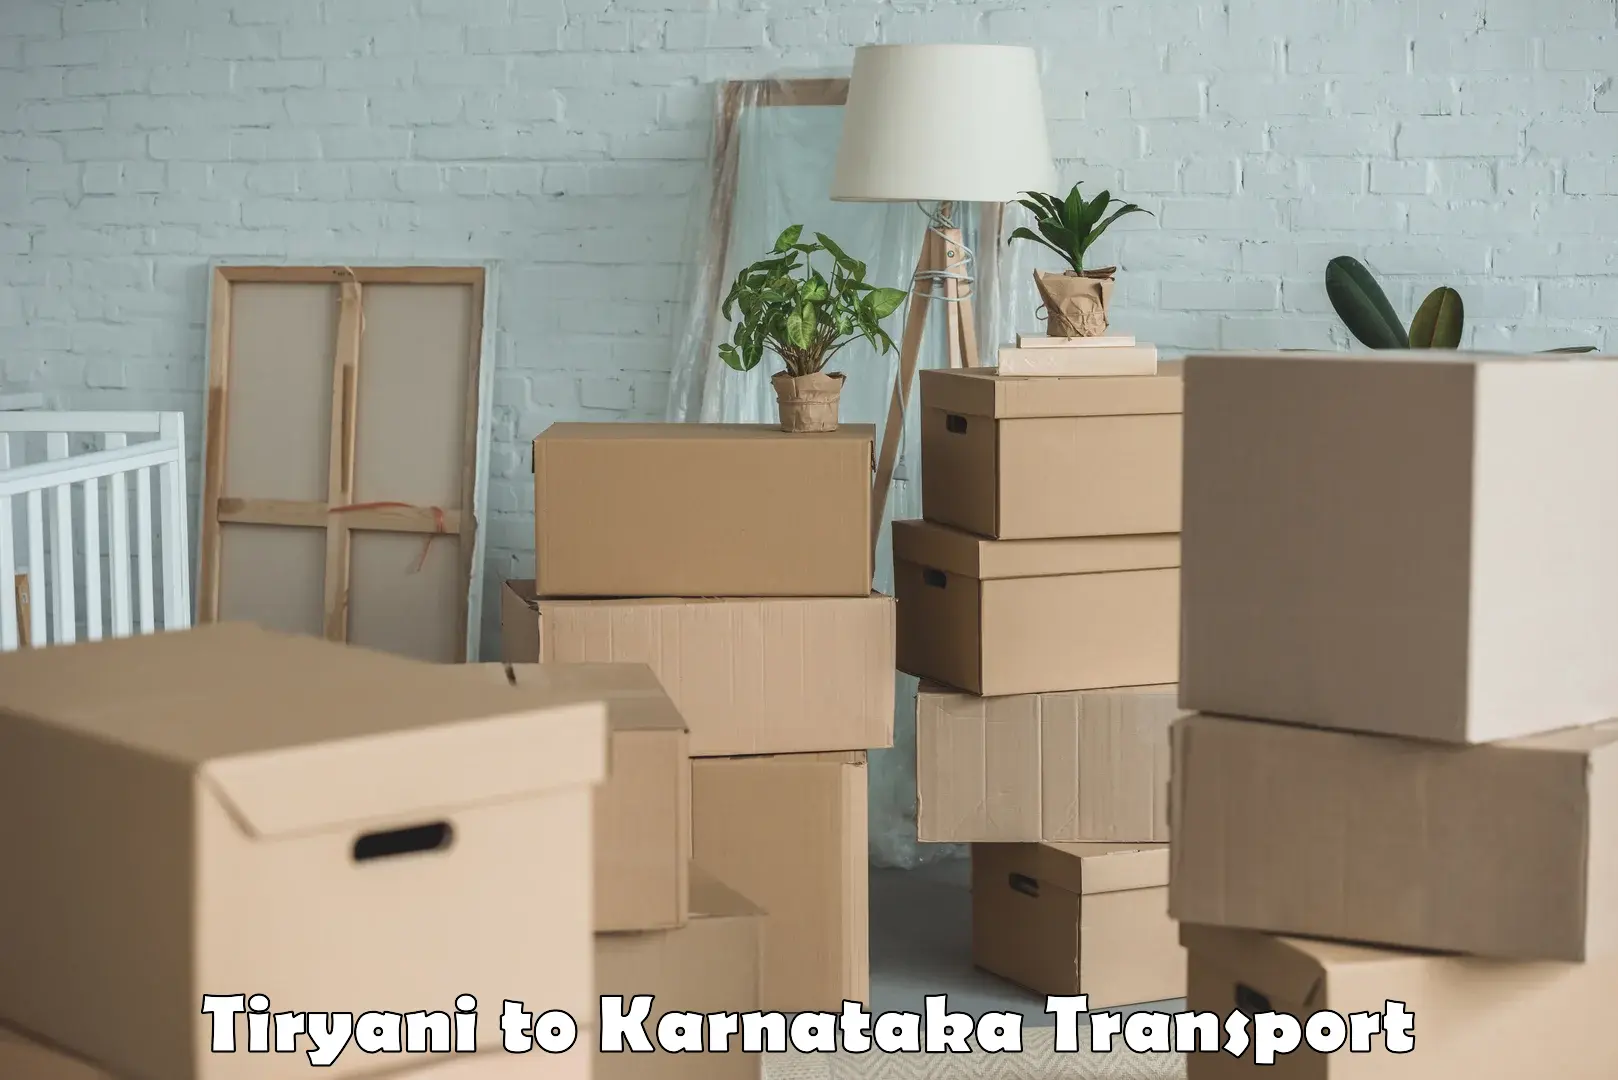 Commercial transport service Tiryani to Kanjarakatte